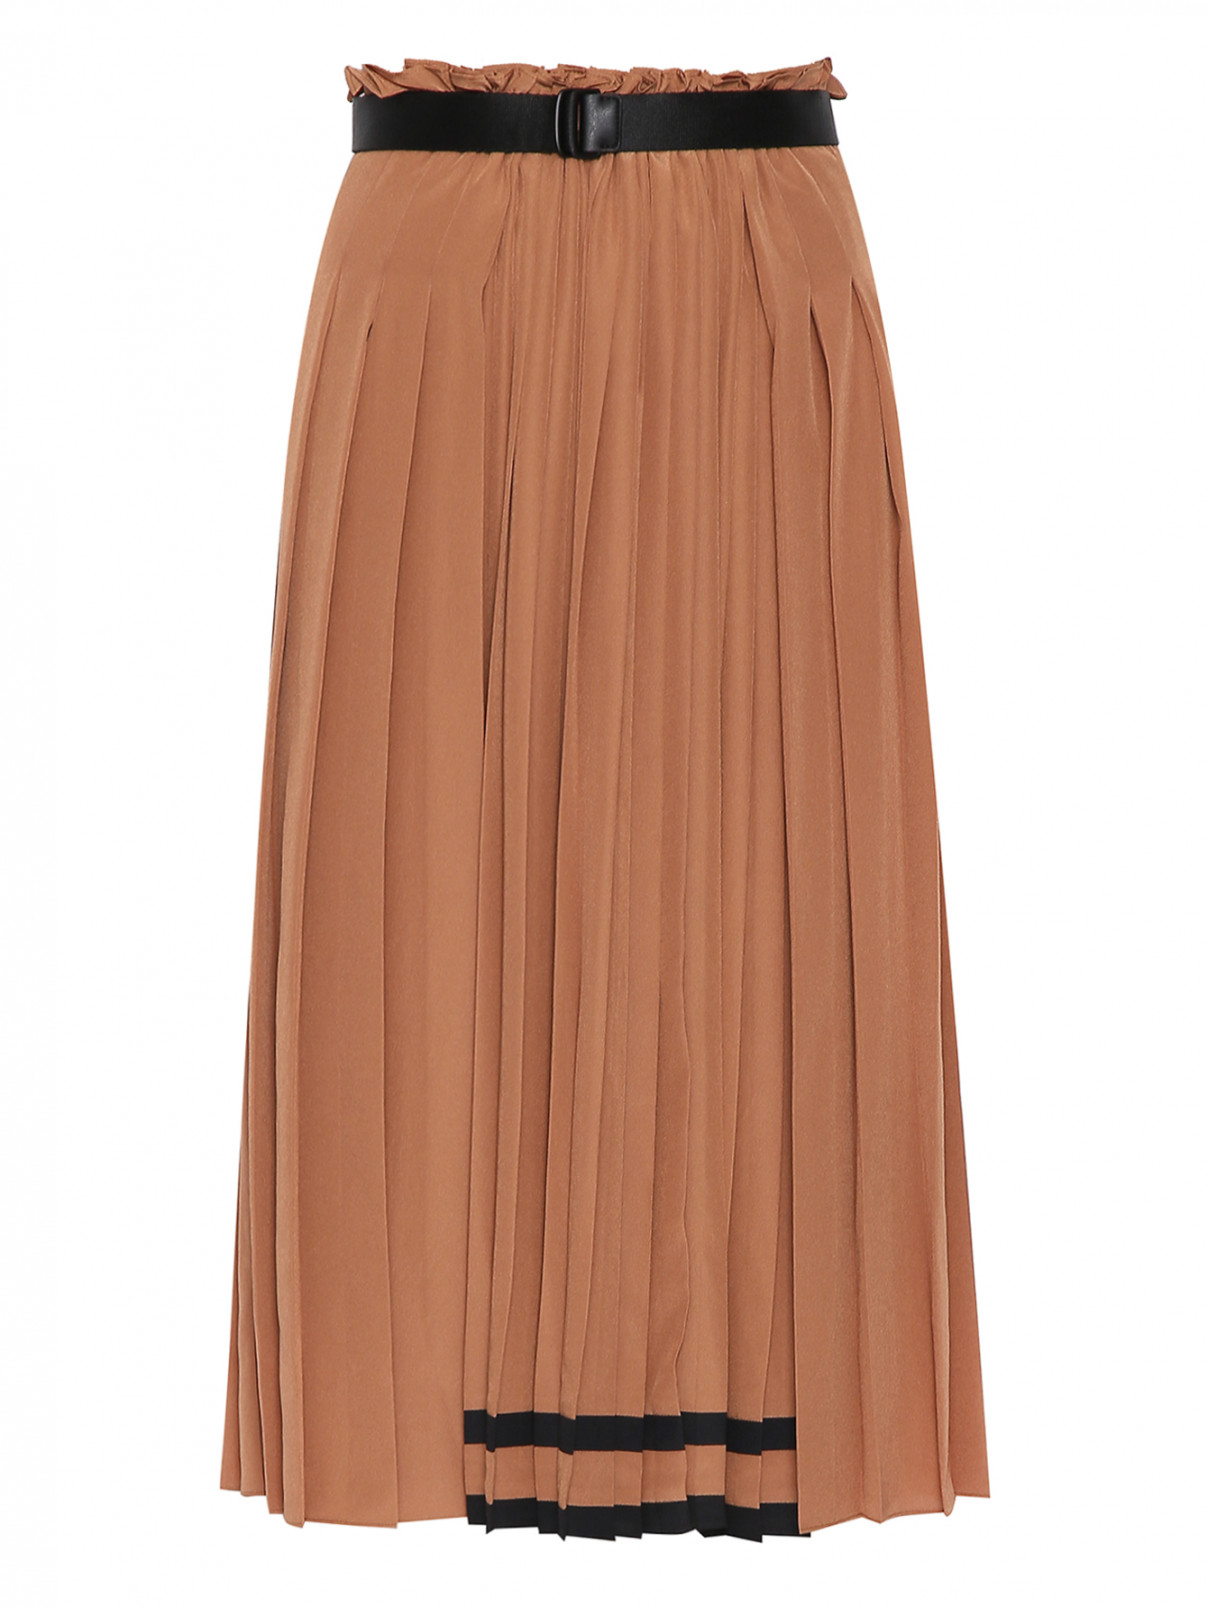 Плиссированная юбка-миди на резинке Max Mara  –  Общий вид  – Цвет:  Бежевый